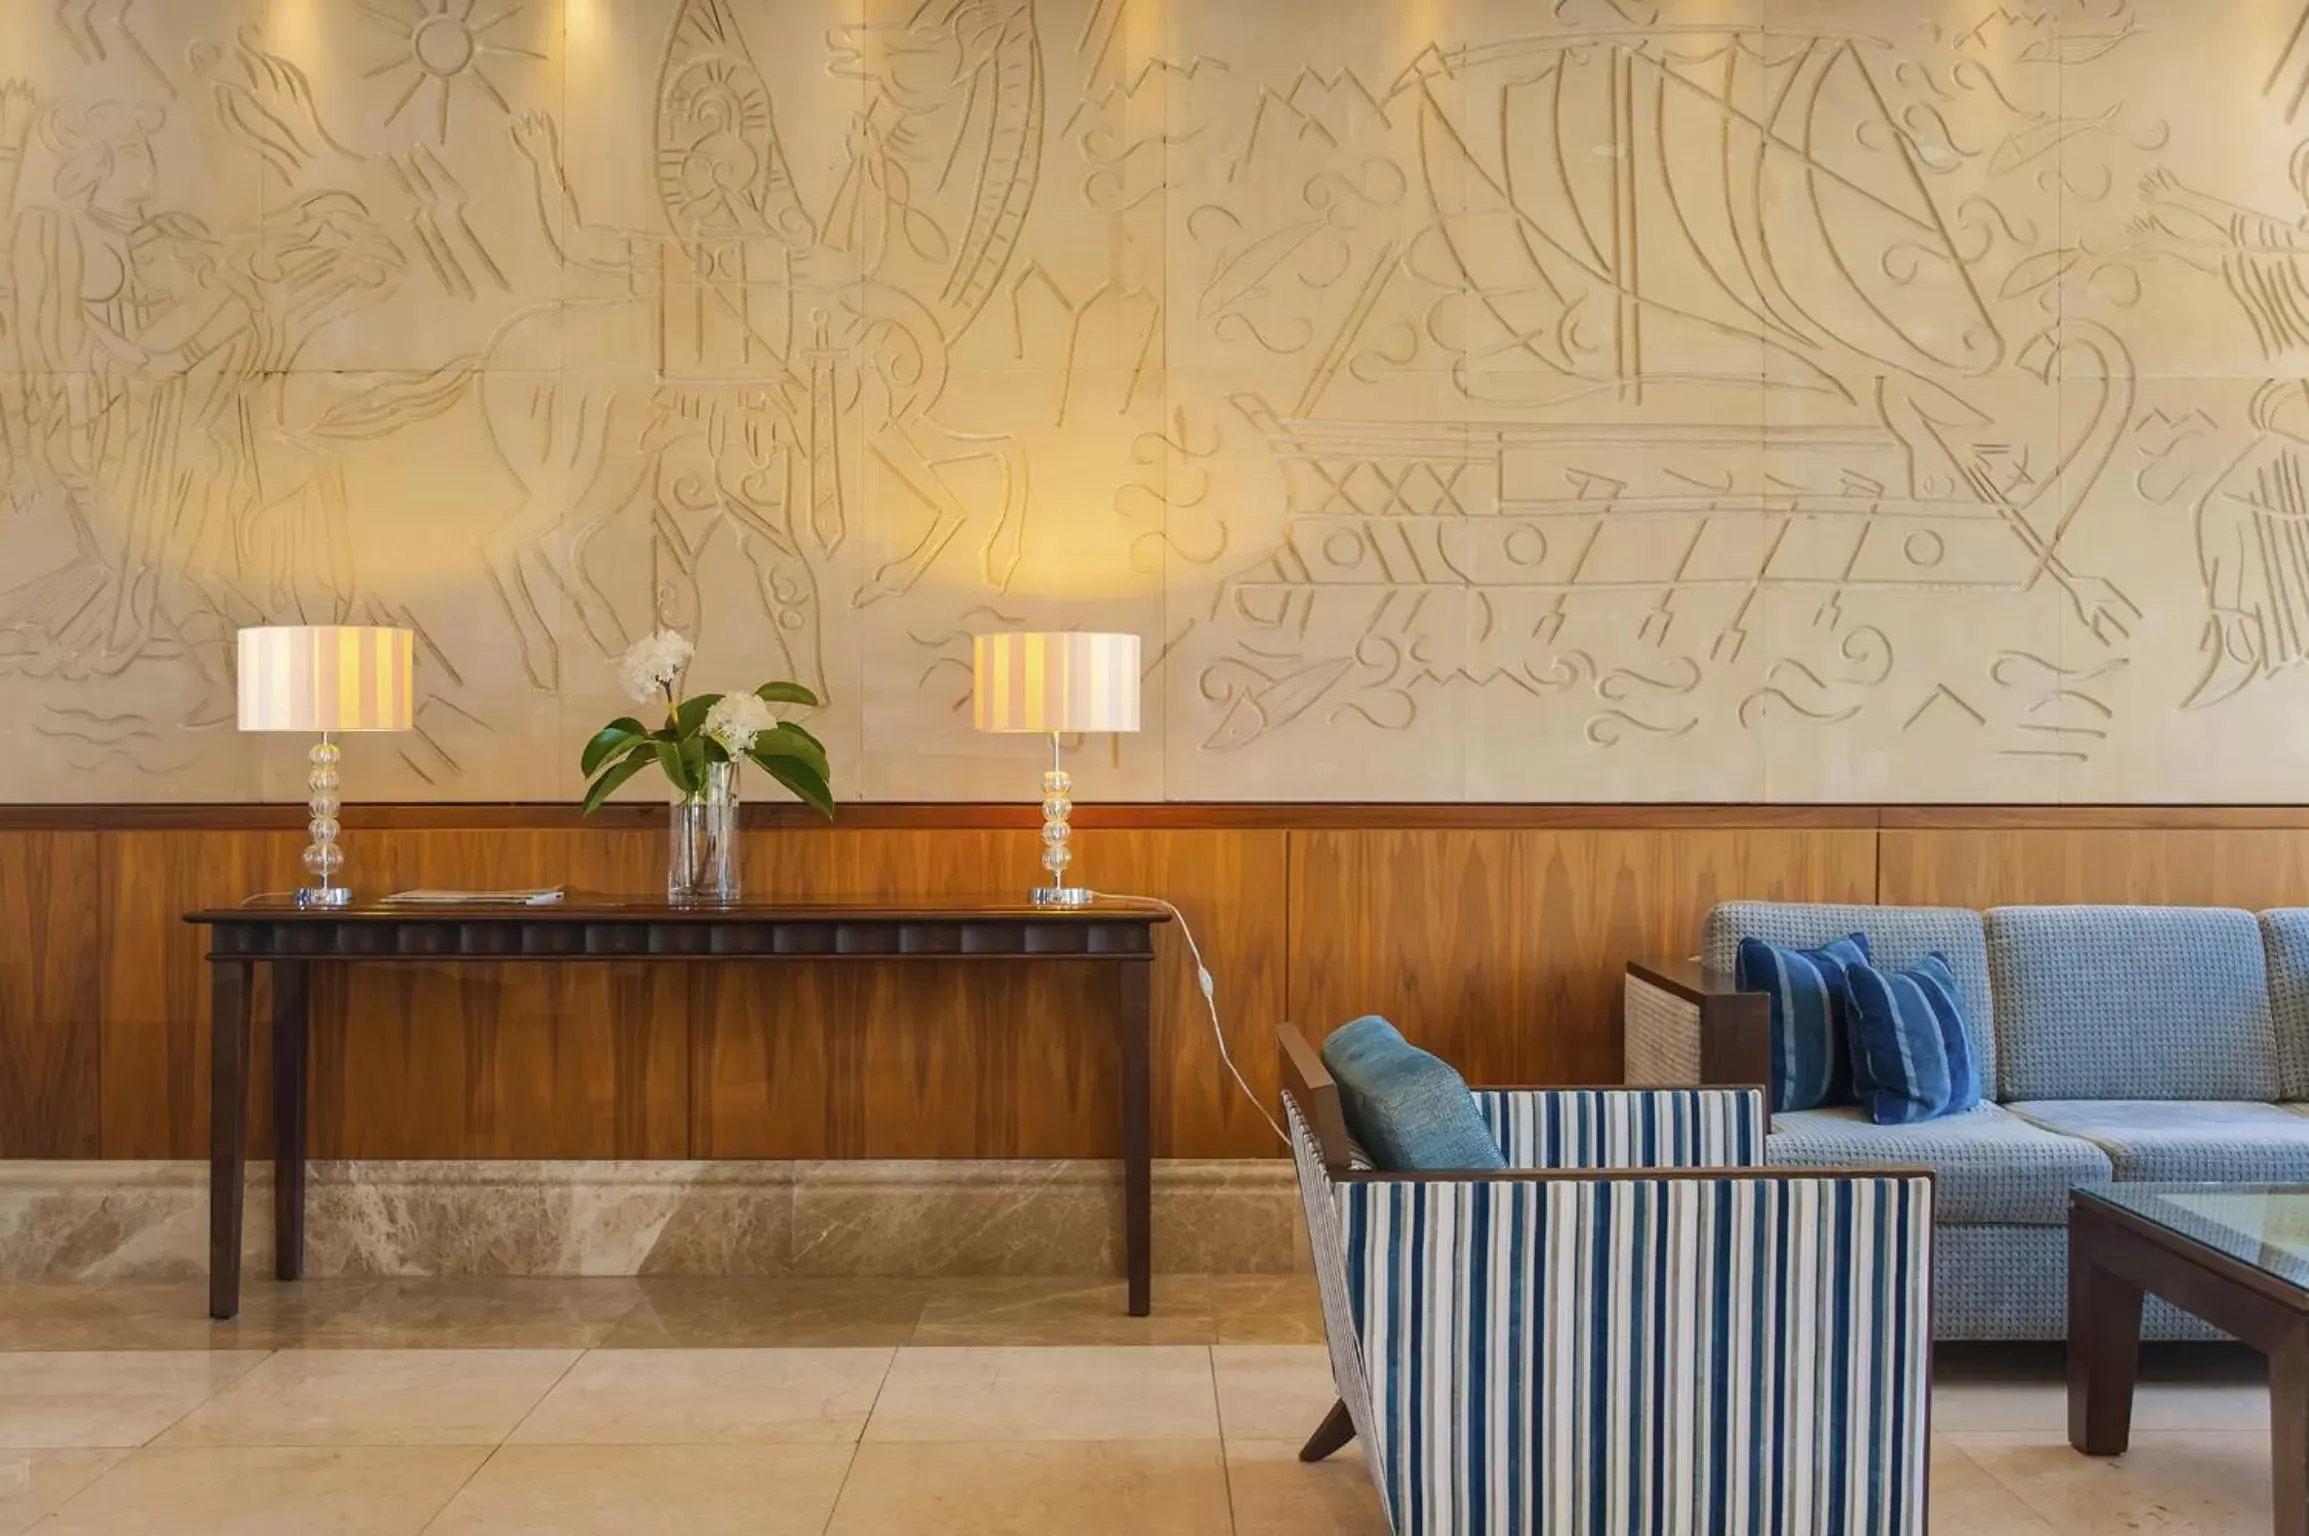 Lobby or reception in Ajax Hotel